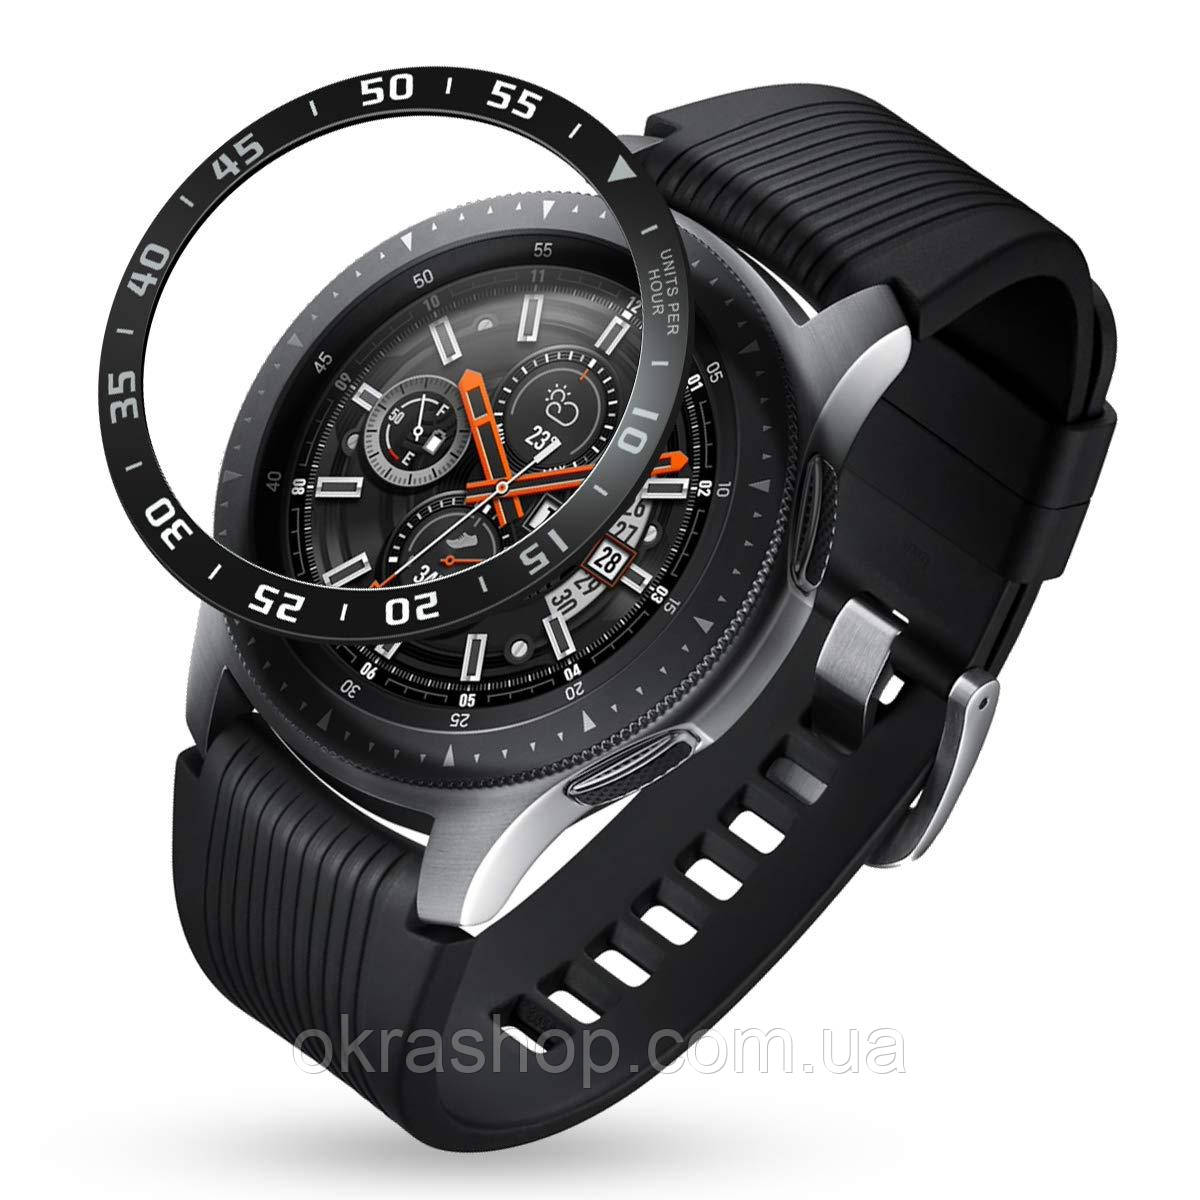 Захисний безель для Samsung Gear S3 / Galaxy Watch 46 mm. Чорний